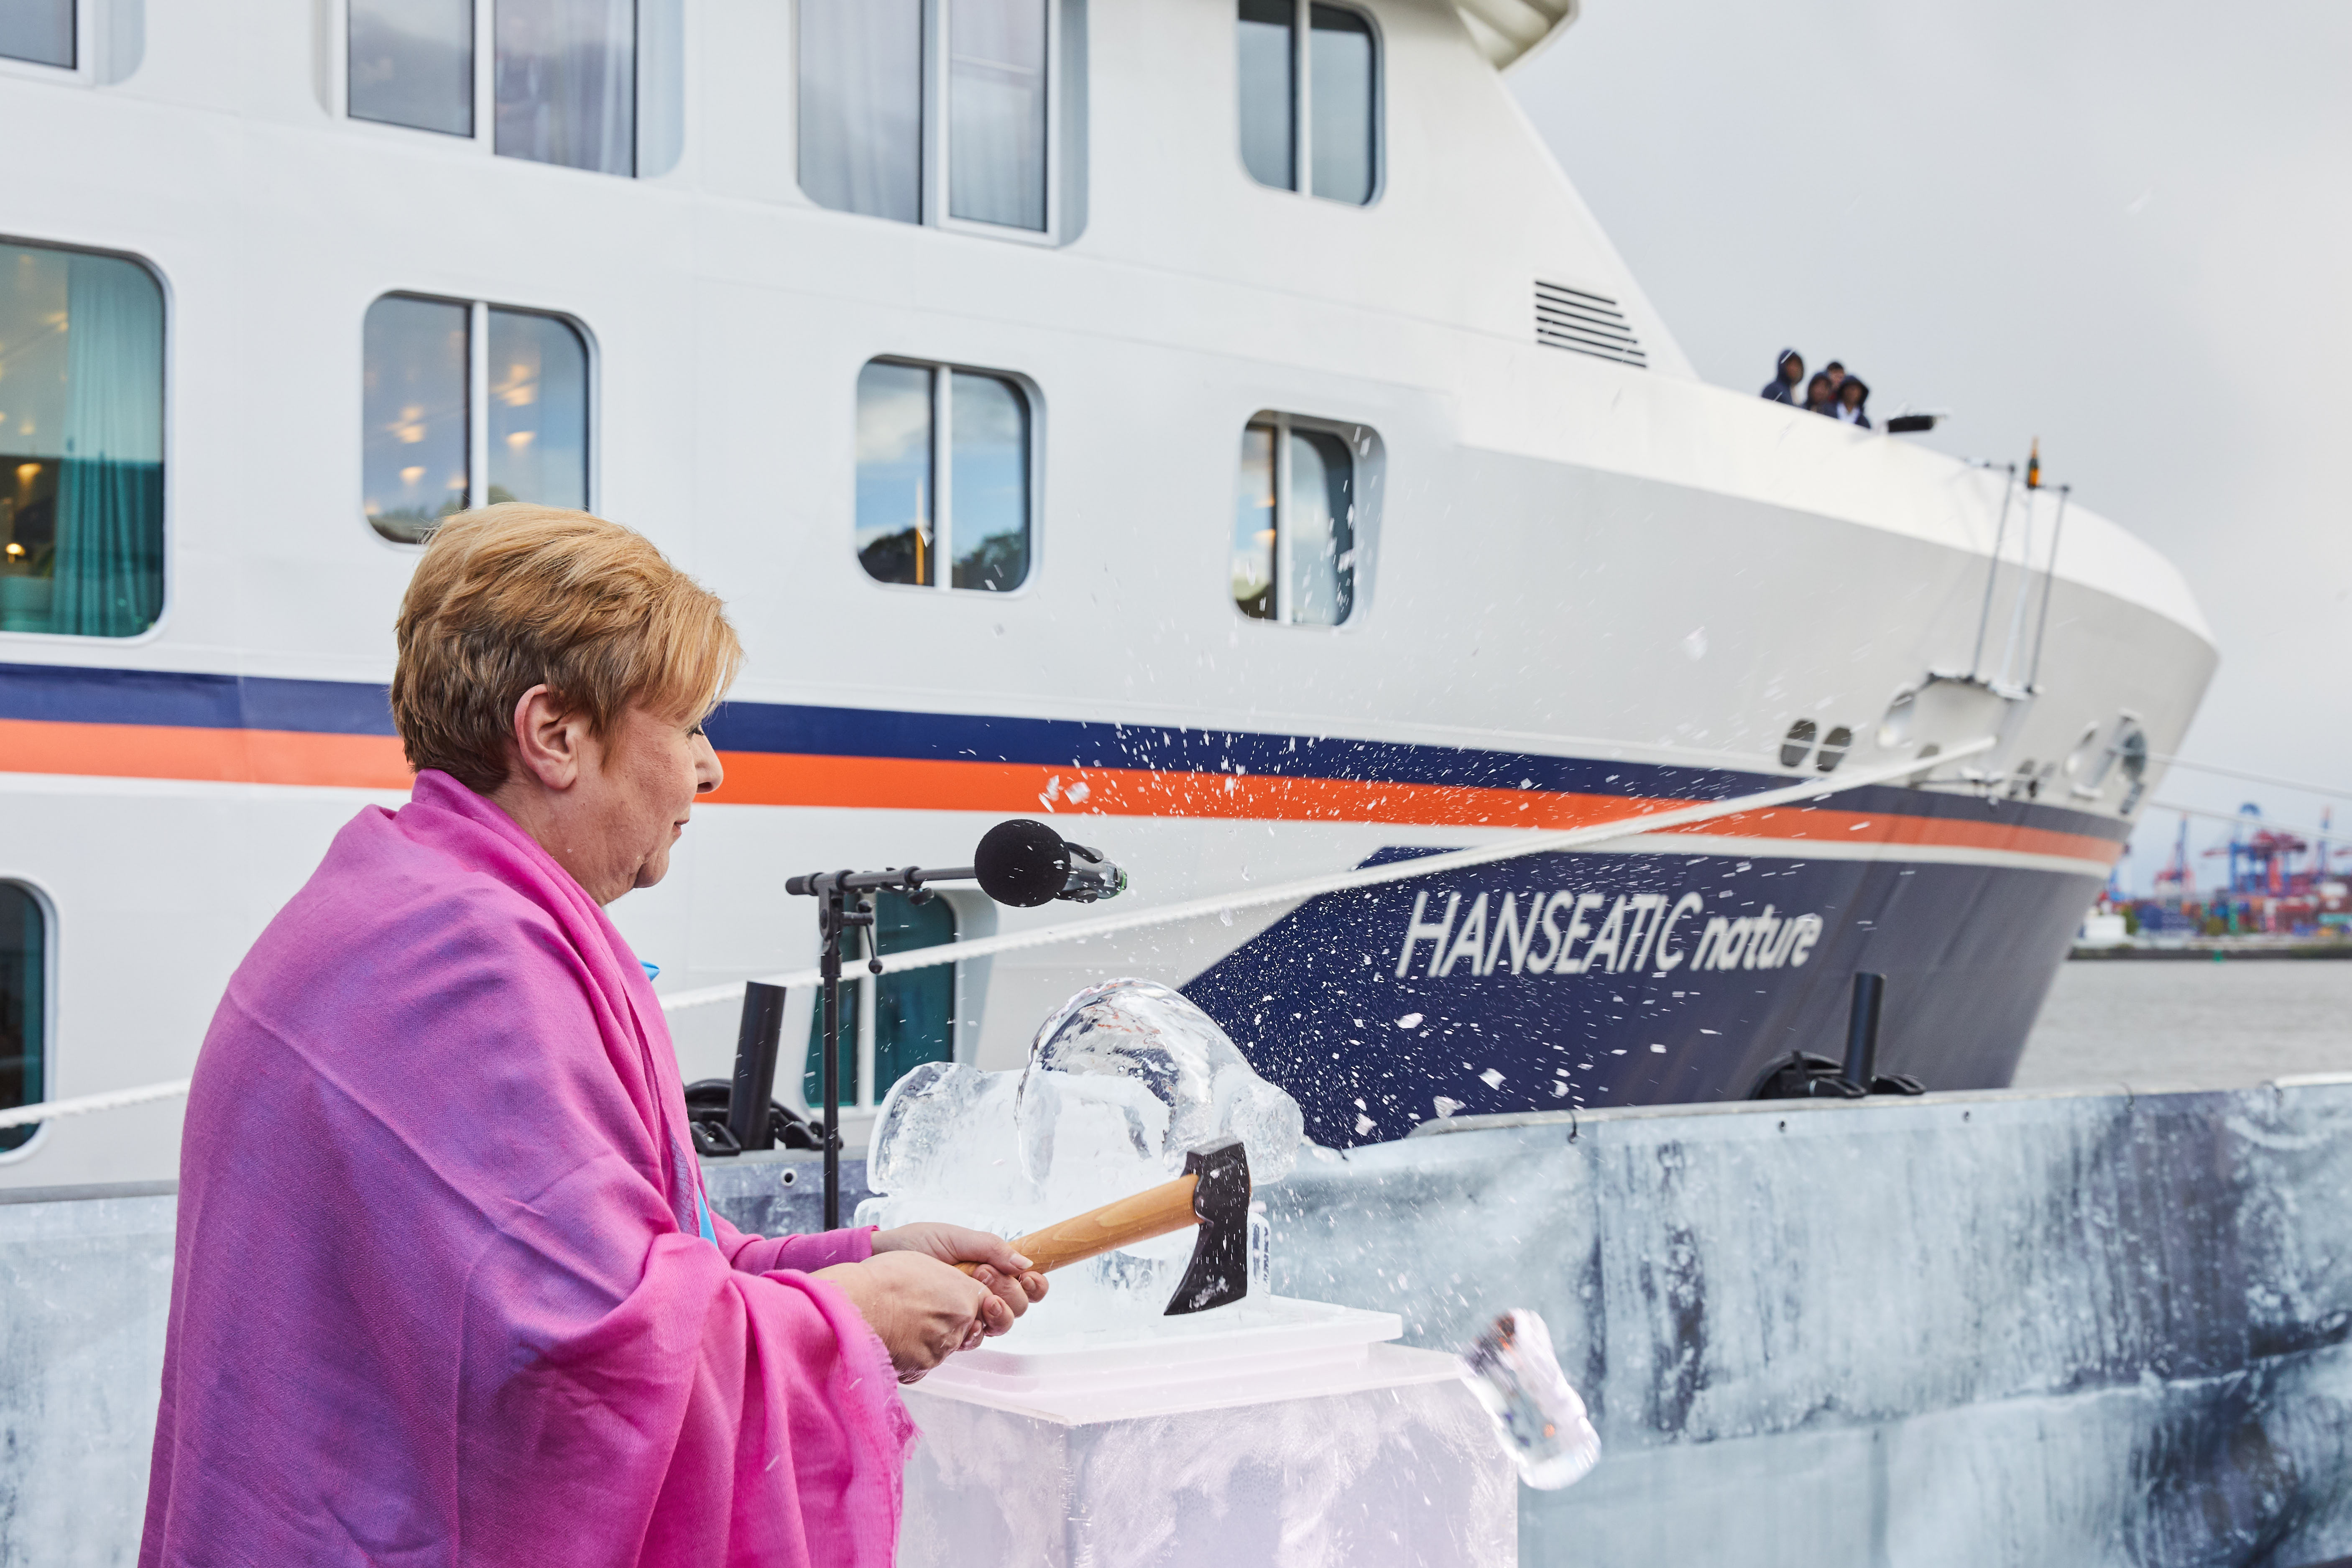 Hapag-Lloyd Cruises hat mit der Hanseatic nature das erste Schiff der neuen Expeditionsklasse im Hamburger Hafen mit allen Mitarbeitern getauft